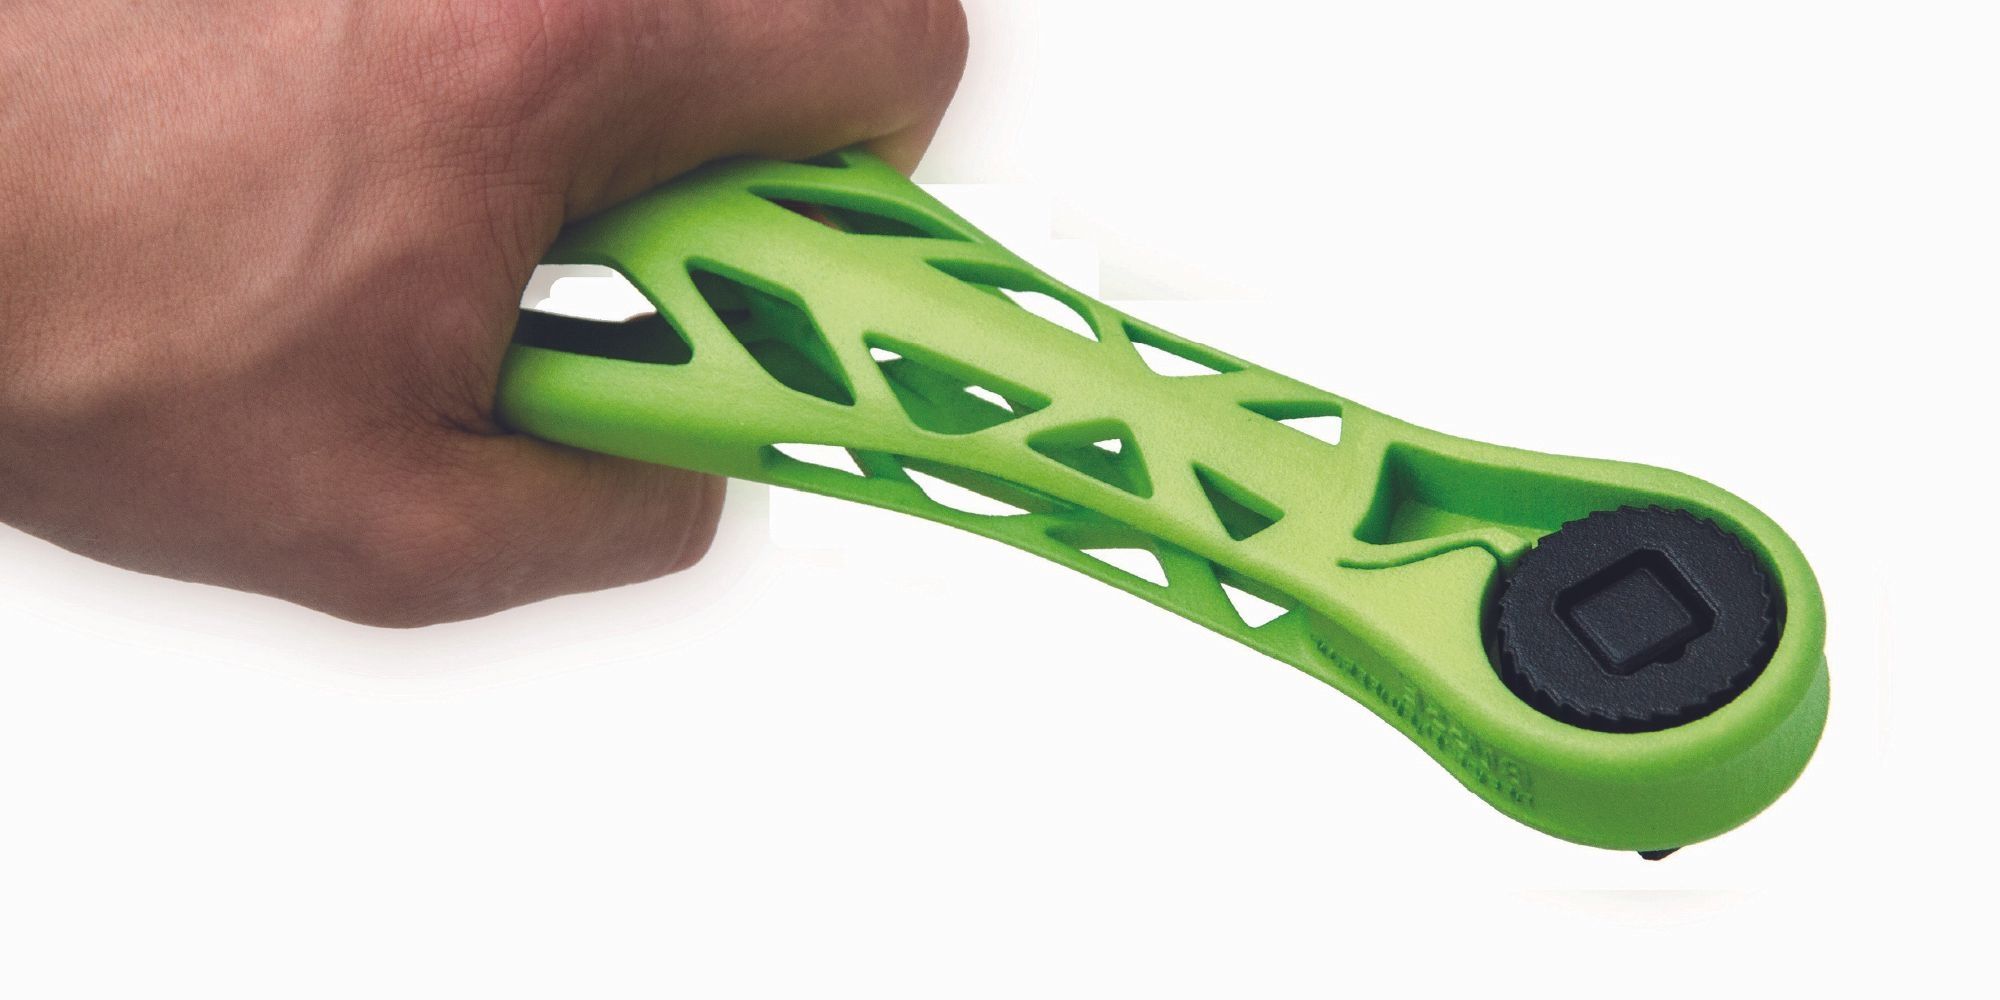 Hand holds a model of a green lightweight ratchet.